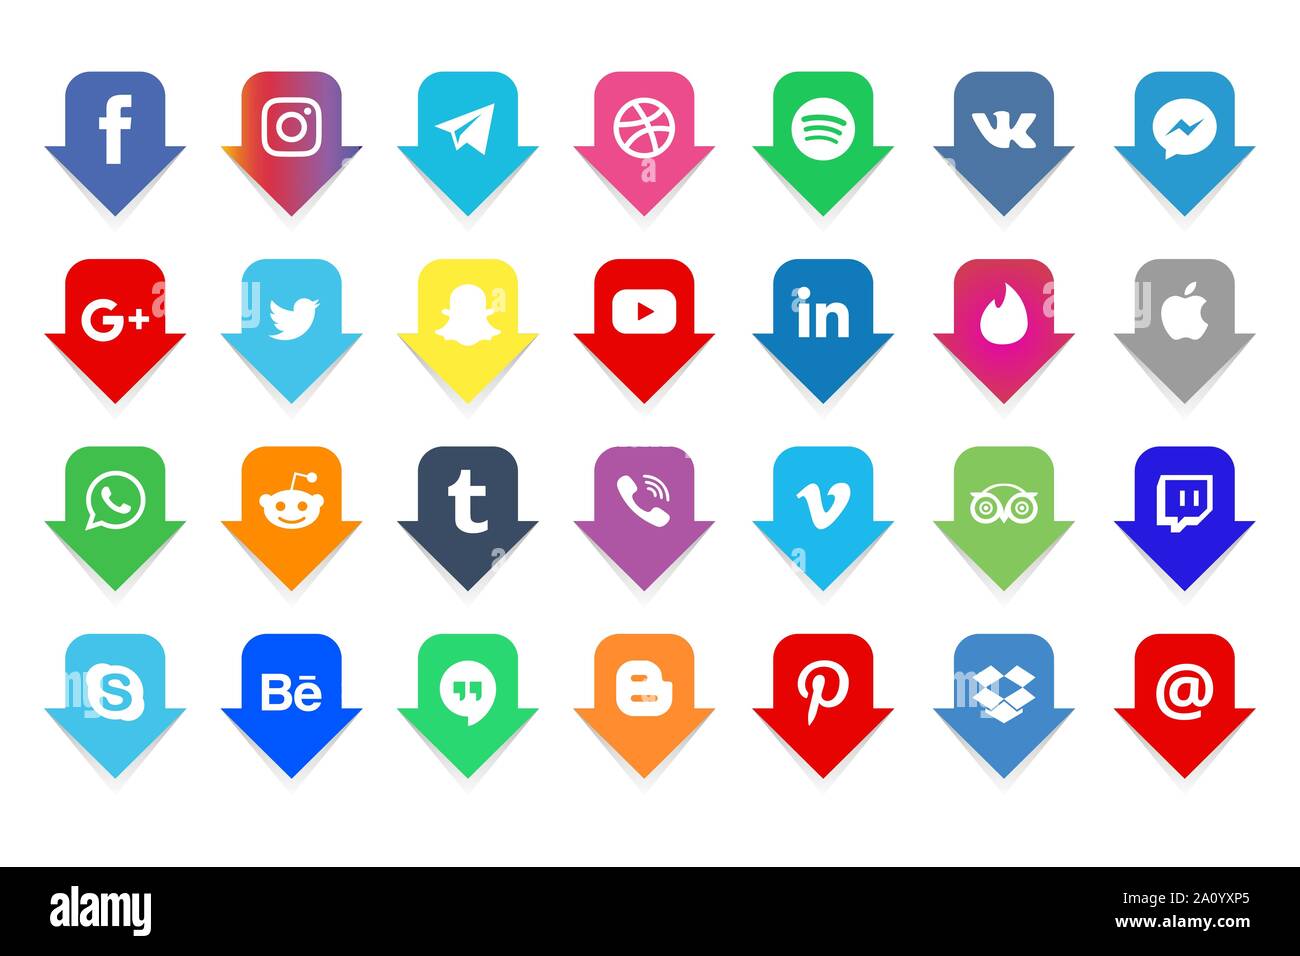 Facebook, twitter, instagram, youtube, snapchat, pinterest, whatsap, vk,  viber, Google, skype Social media icons set Collection of popular social  medi Stock Vector Image & Art - Alamy